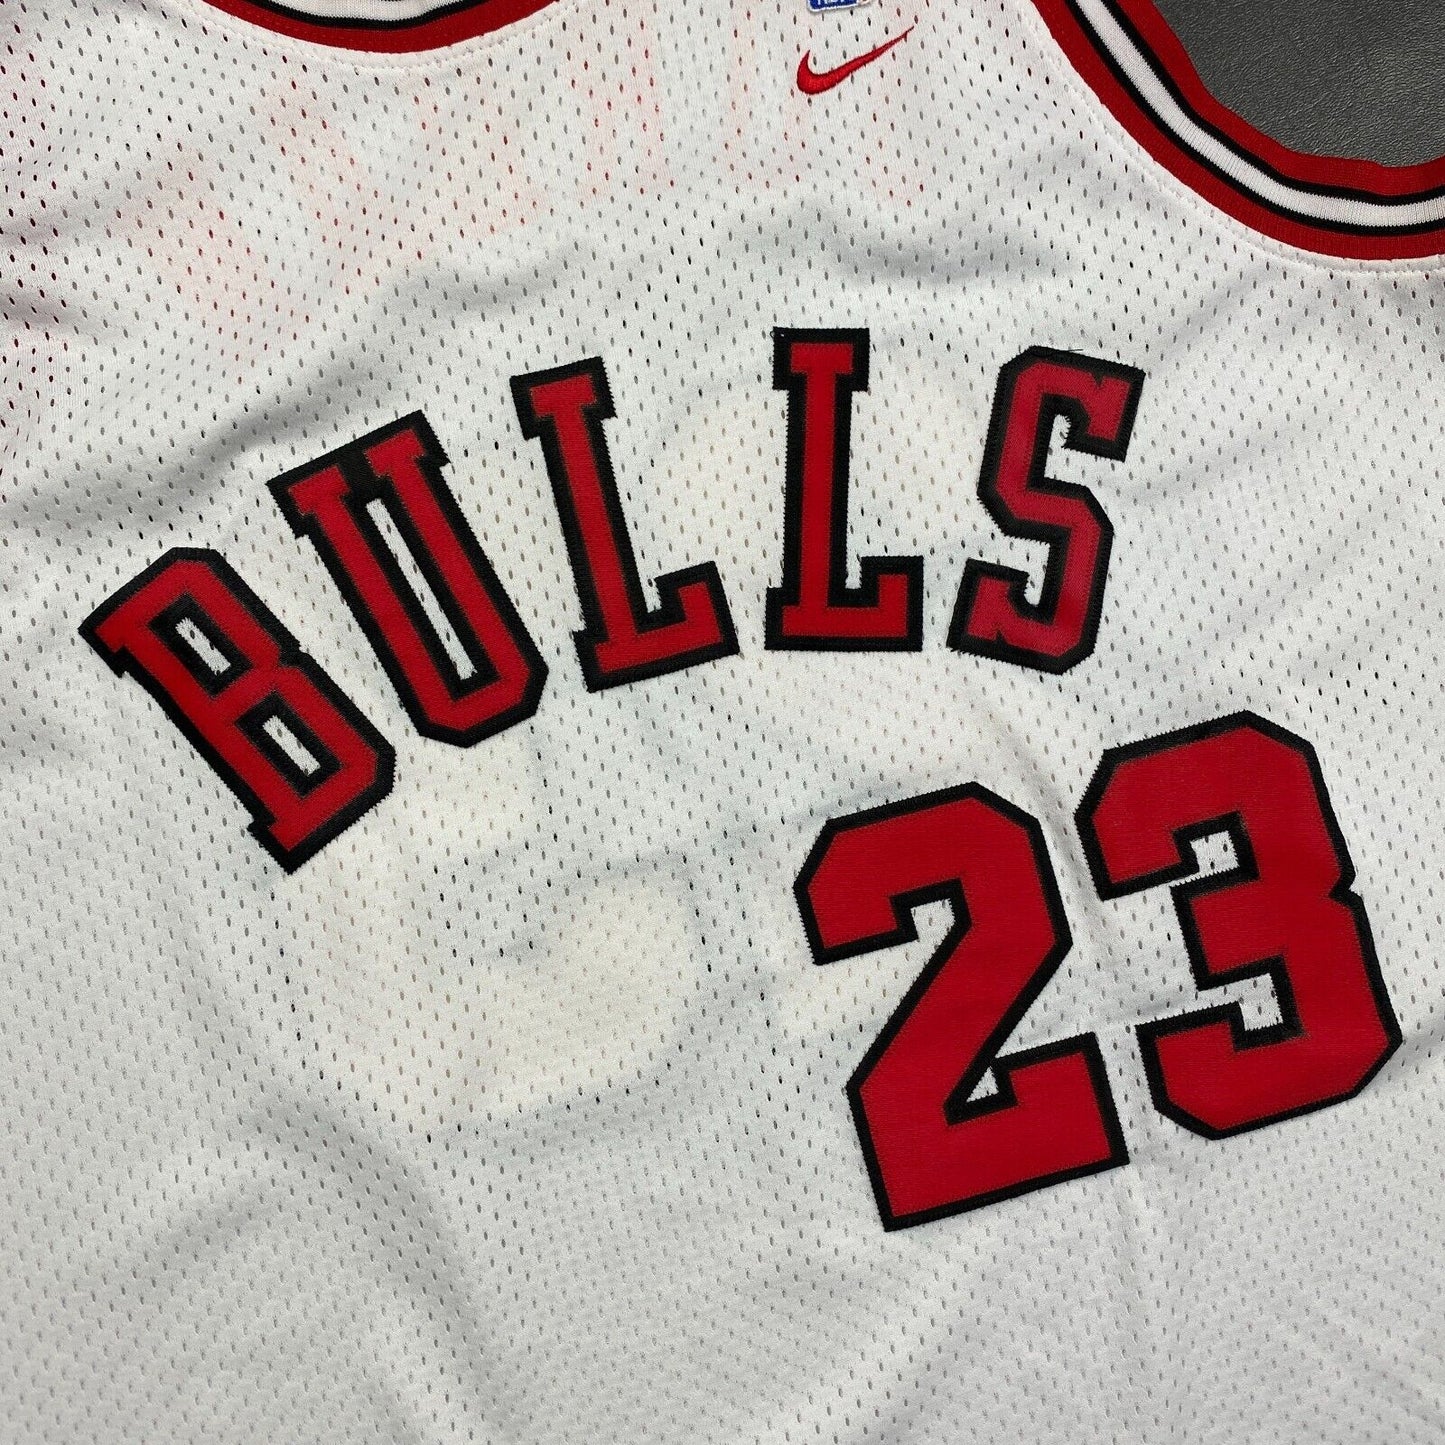 100% Authentic Michael Jordan Vintage Nike 84 85 Bulls Rookie Jersey Size L Mens